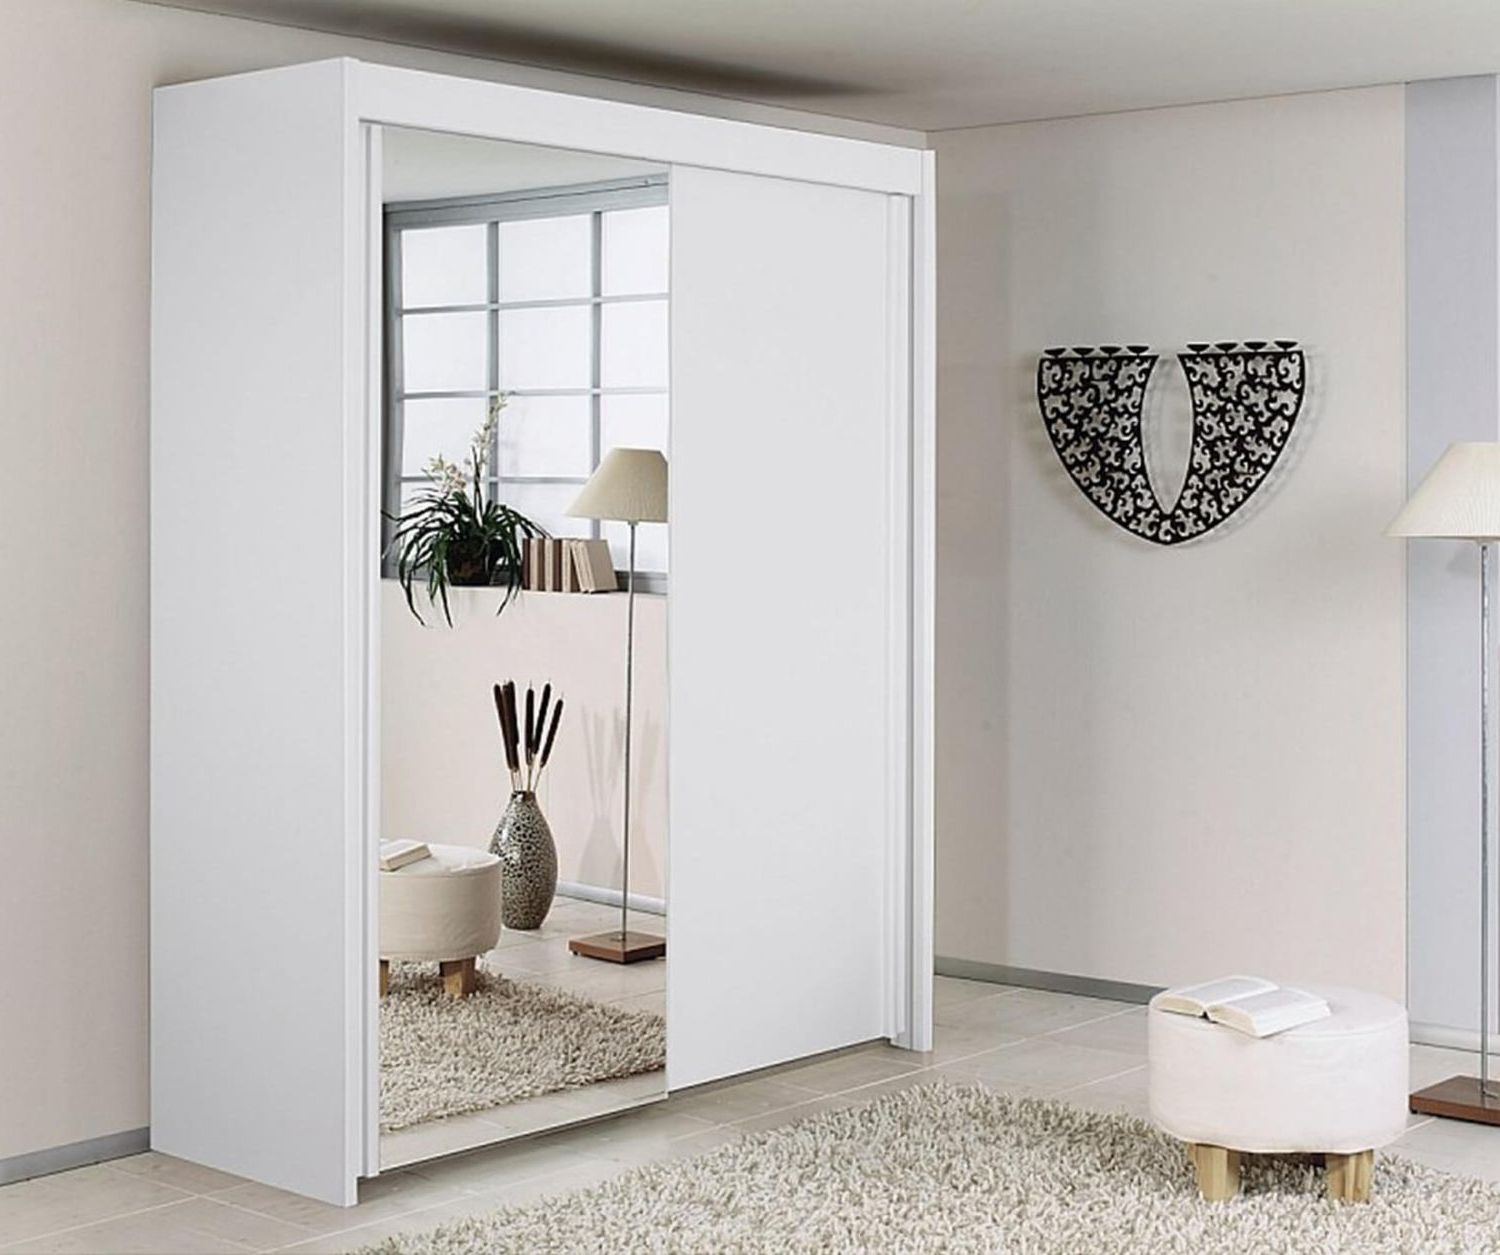 Rauch Imperial | Imperial Alpine White 2 Door Sliding Wardrobe With 1  Mirror (w181cm)| Furnituredirectuk With Regard To Rauch Imperial Wardrobes (Gallery 2 of 20)